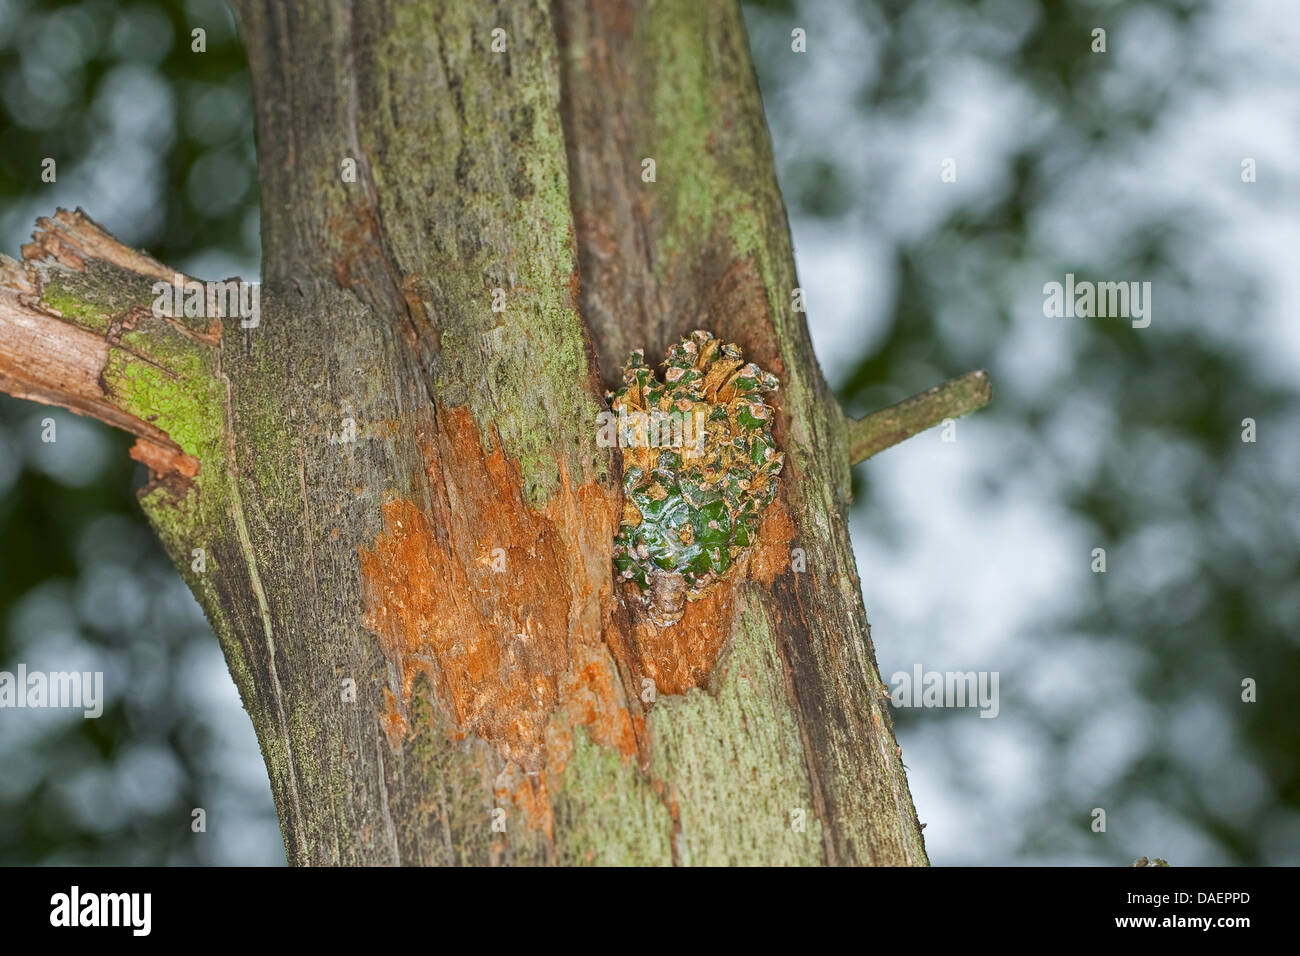 La semilla-craqueo sitios de un carpintero en el tronco de un árbol, Alemania Foto de stock